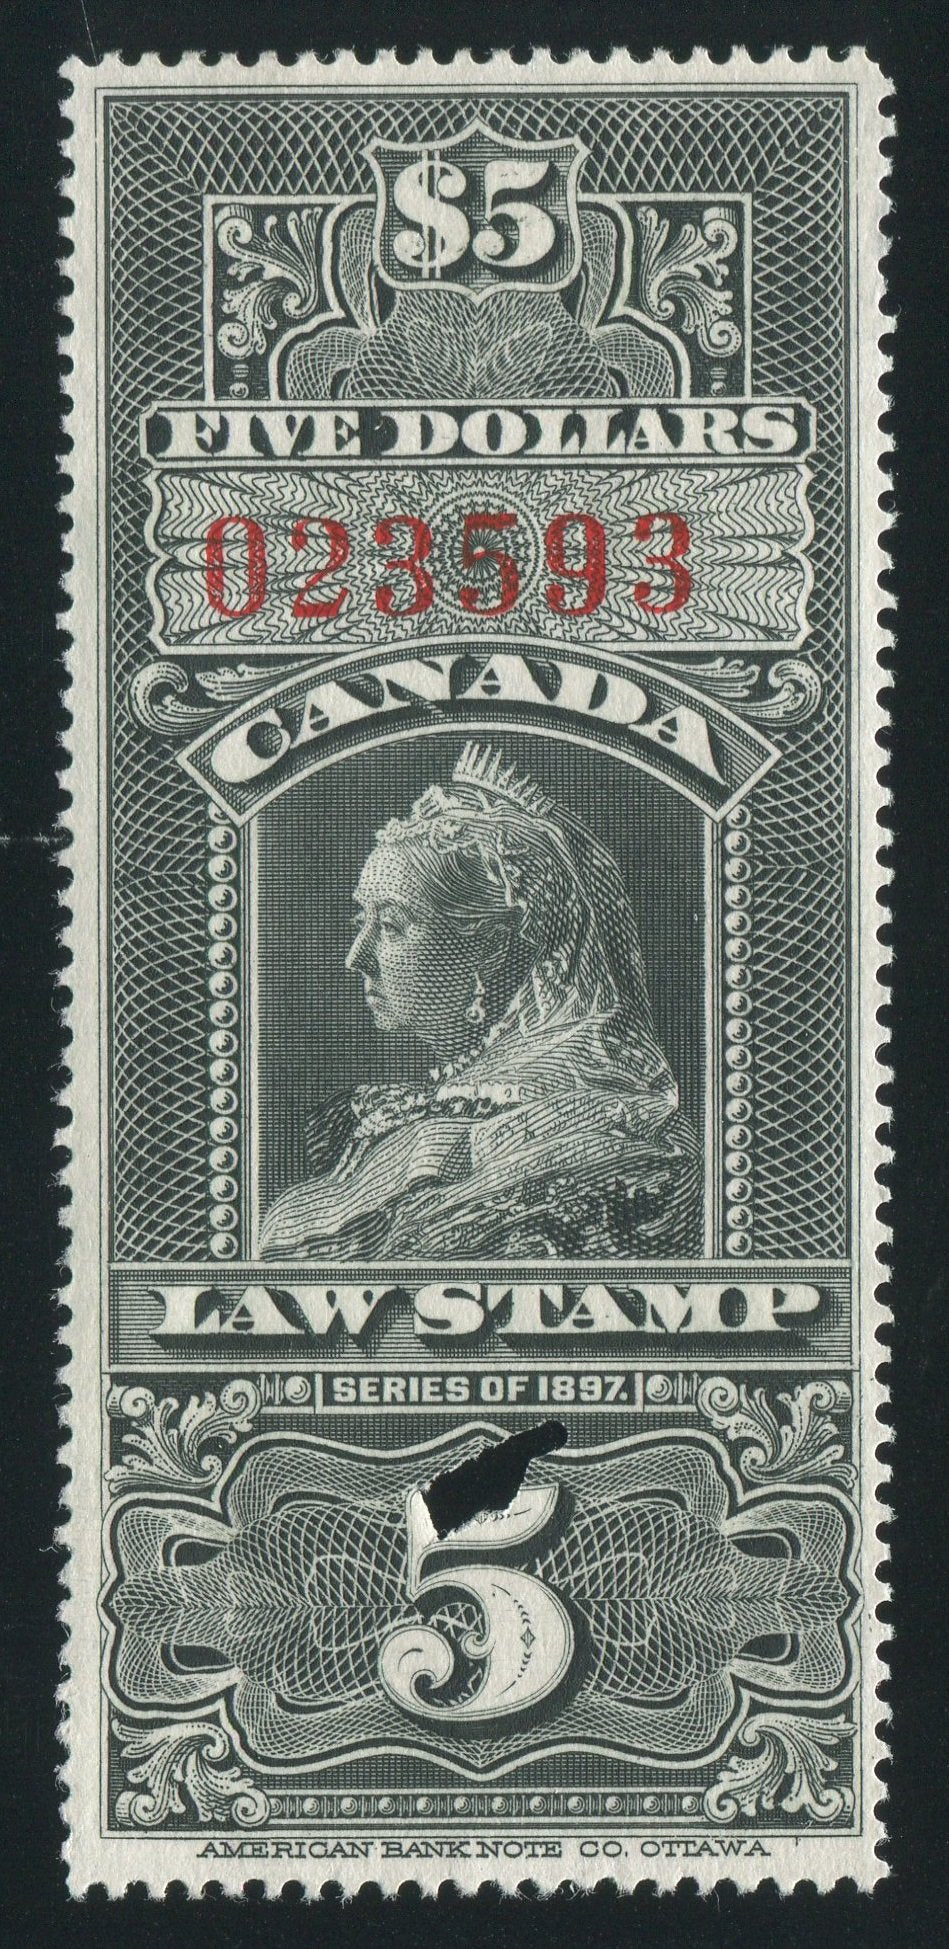 0010SC1710 - FSC10 - Used - Deveney Stamps Ltd. Canadian Stamps